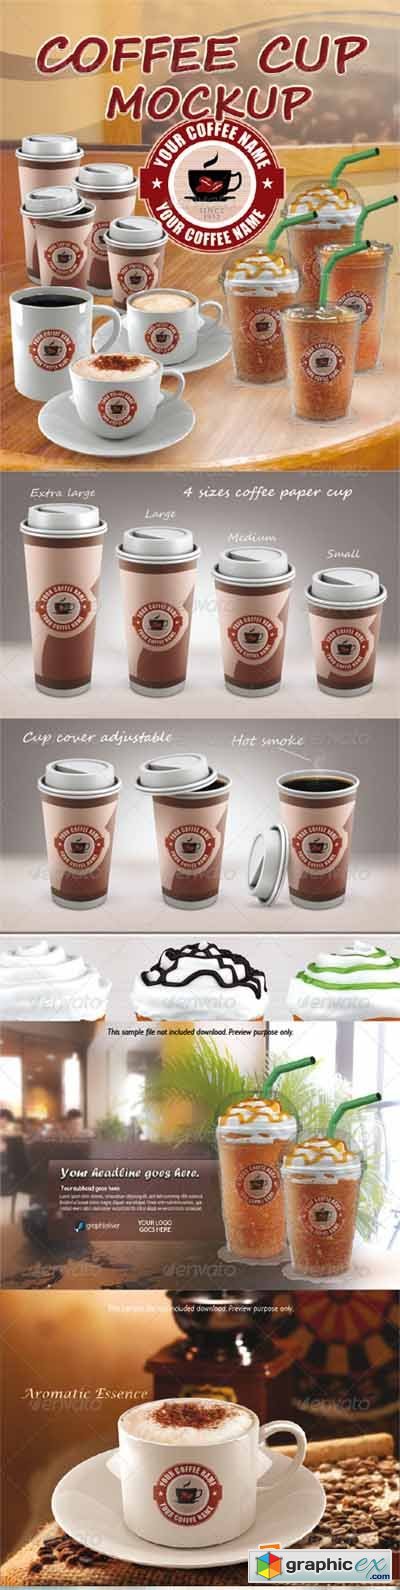 COFFEE CUP MOCKUP 3635183